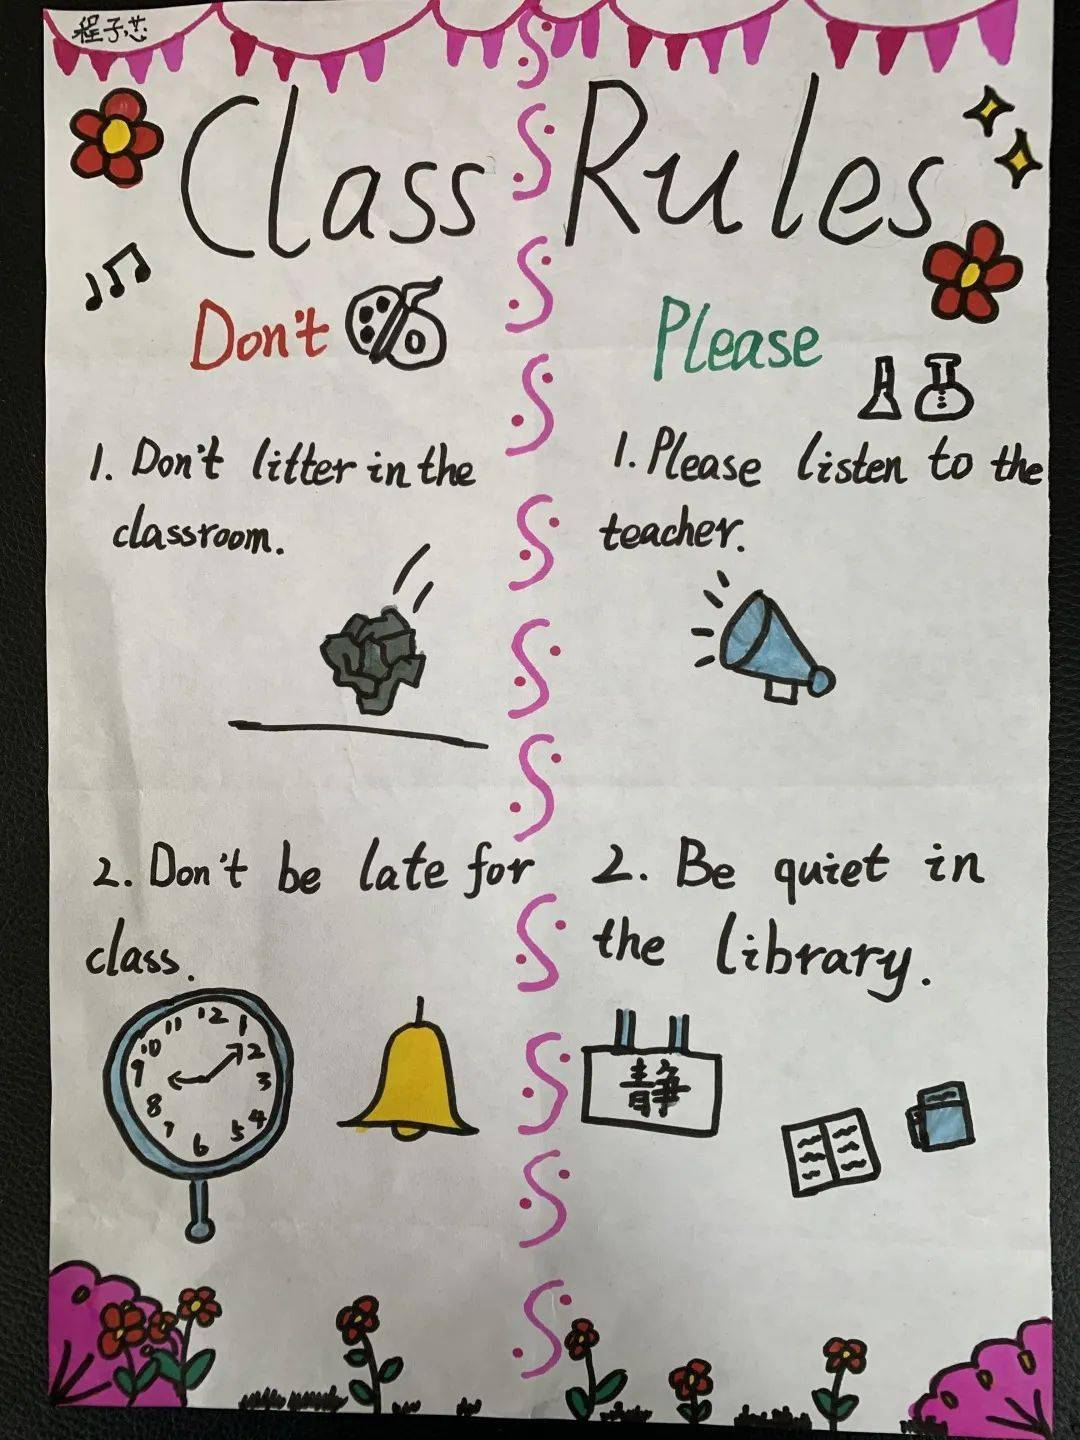 一起看看他们制定的班级规则是不是非常科学合理呀~二年级孩子们围绕